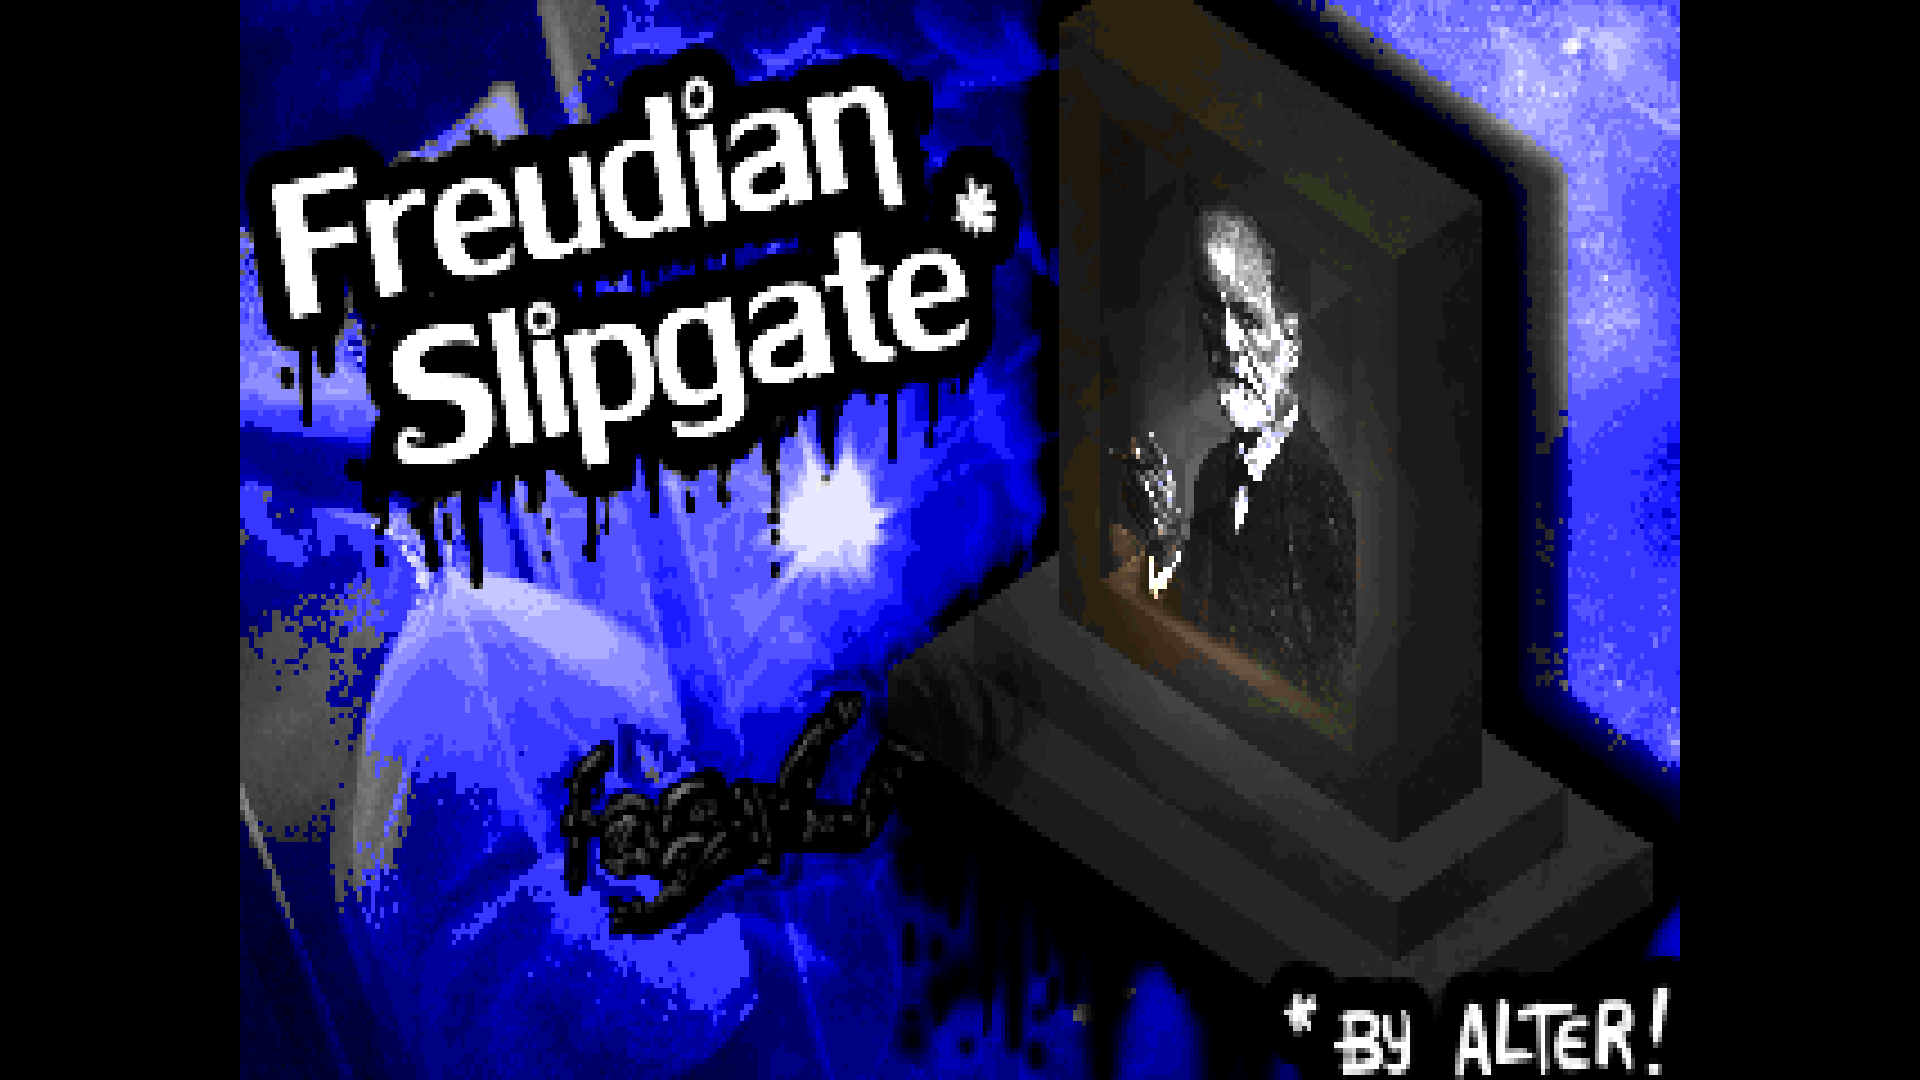 complex_freudian_slipgate